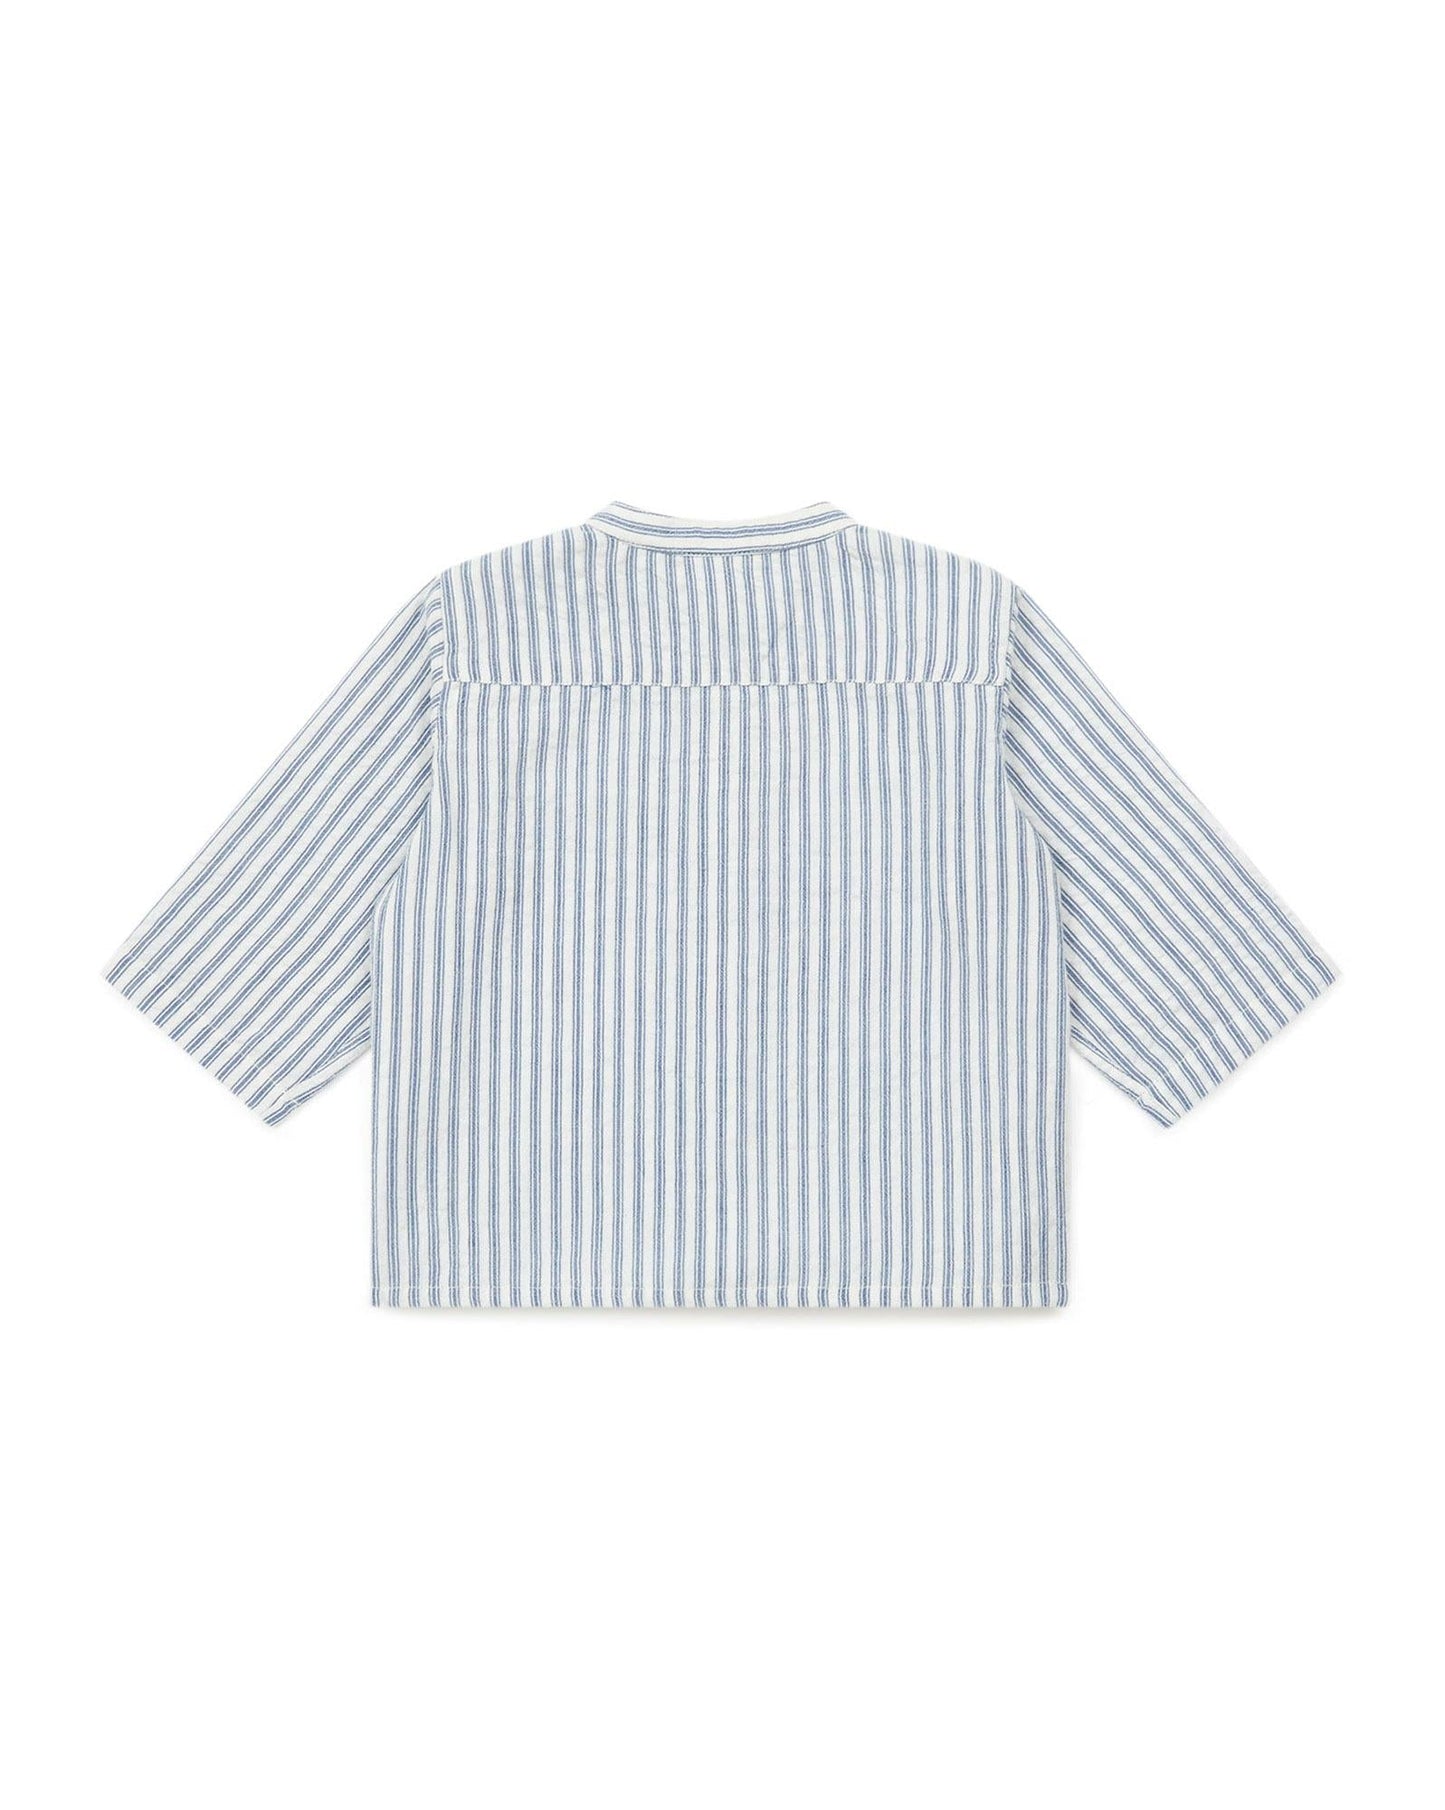 Shirt - Inter Bleue Baby in Poplin striped